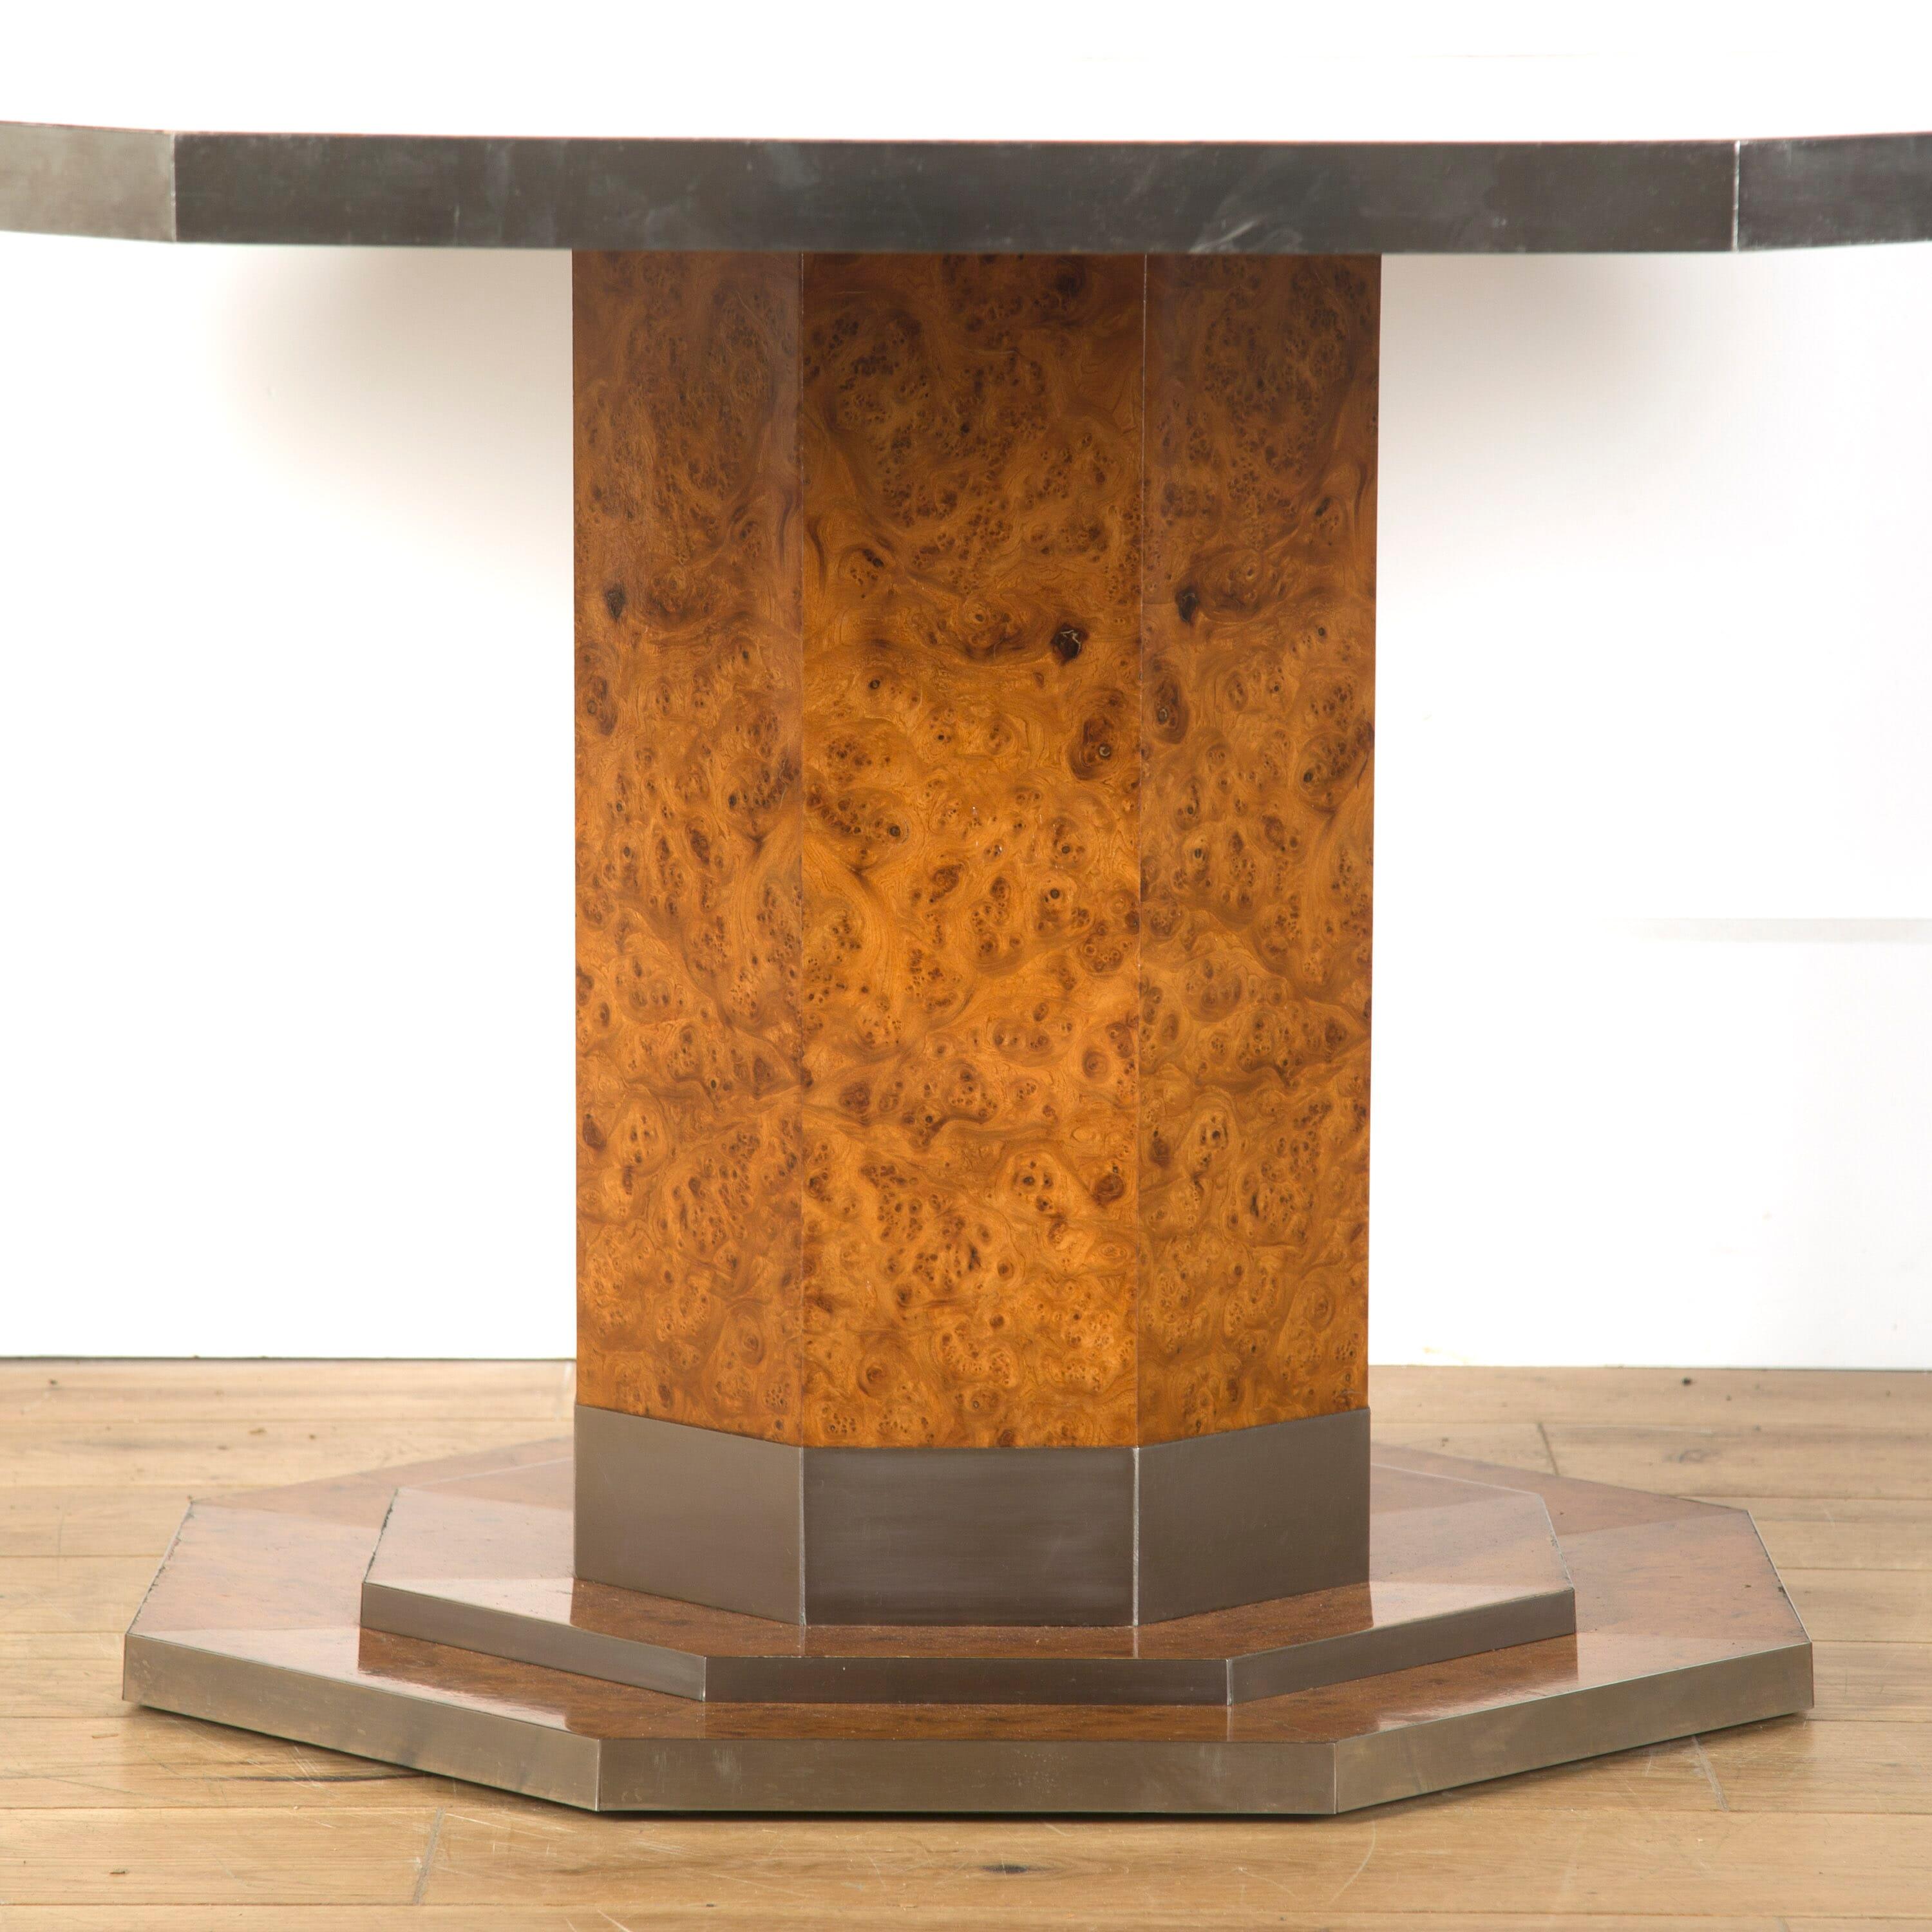 Mid-20th century Belgium burr elm octagonal century table.